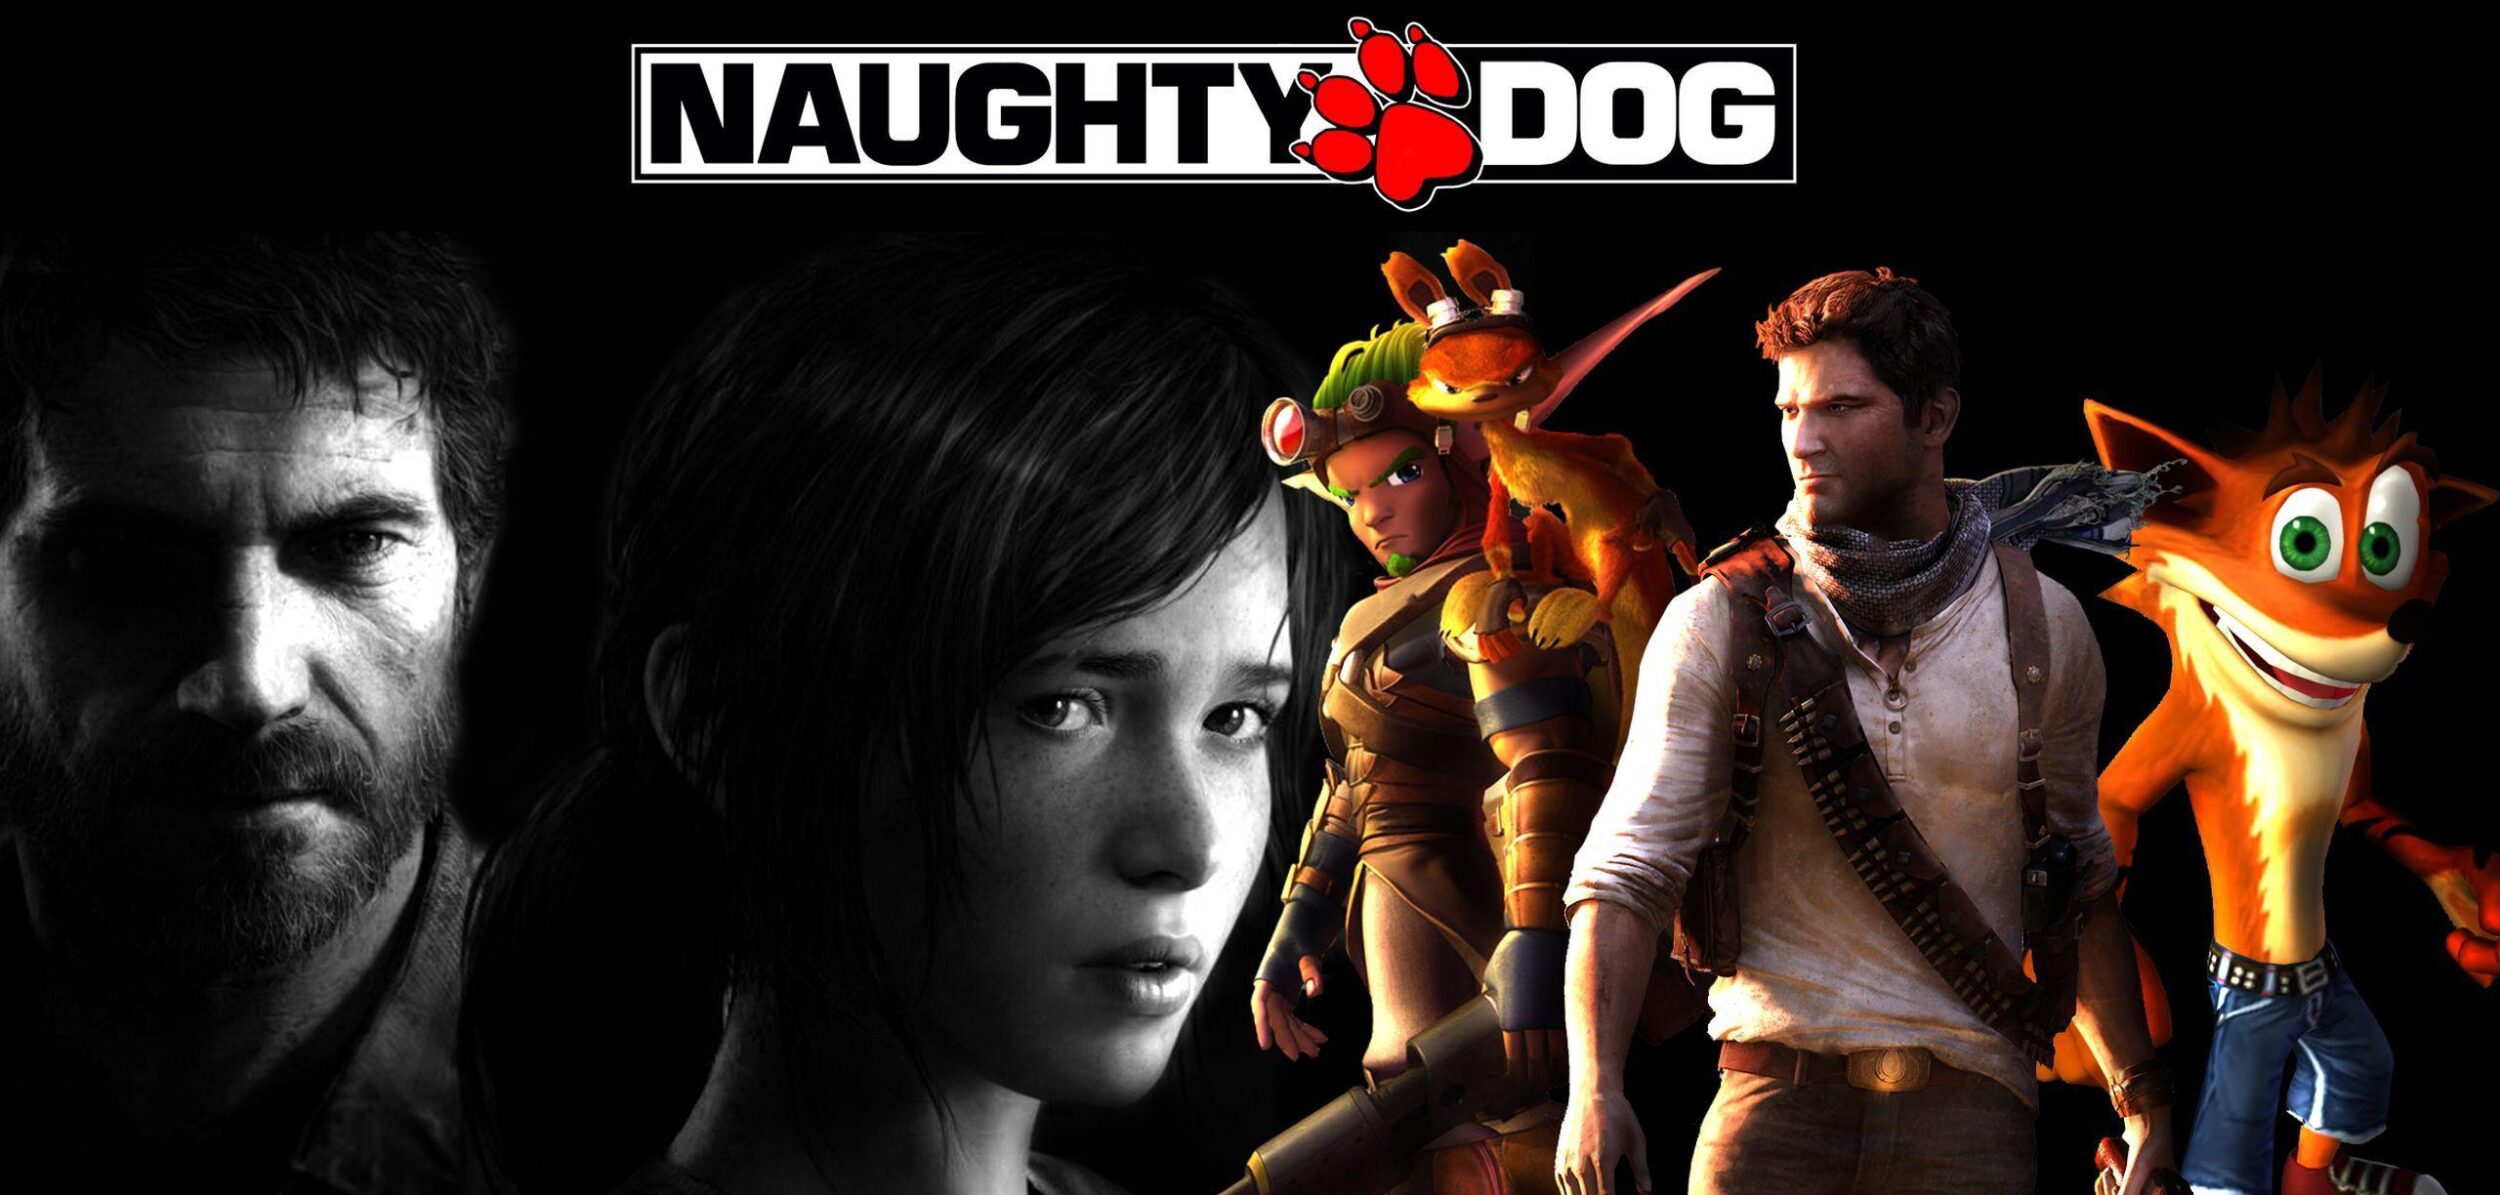 Banner mostrando maiores lançamentos da empresa Naughty Dog